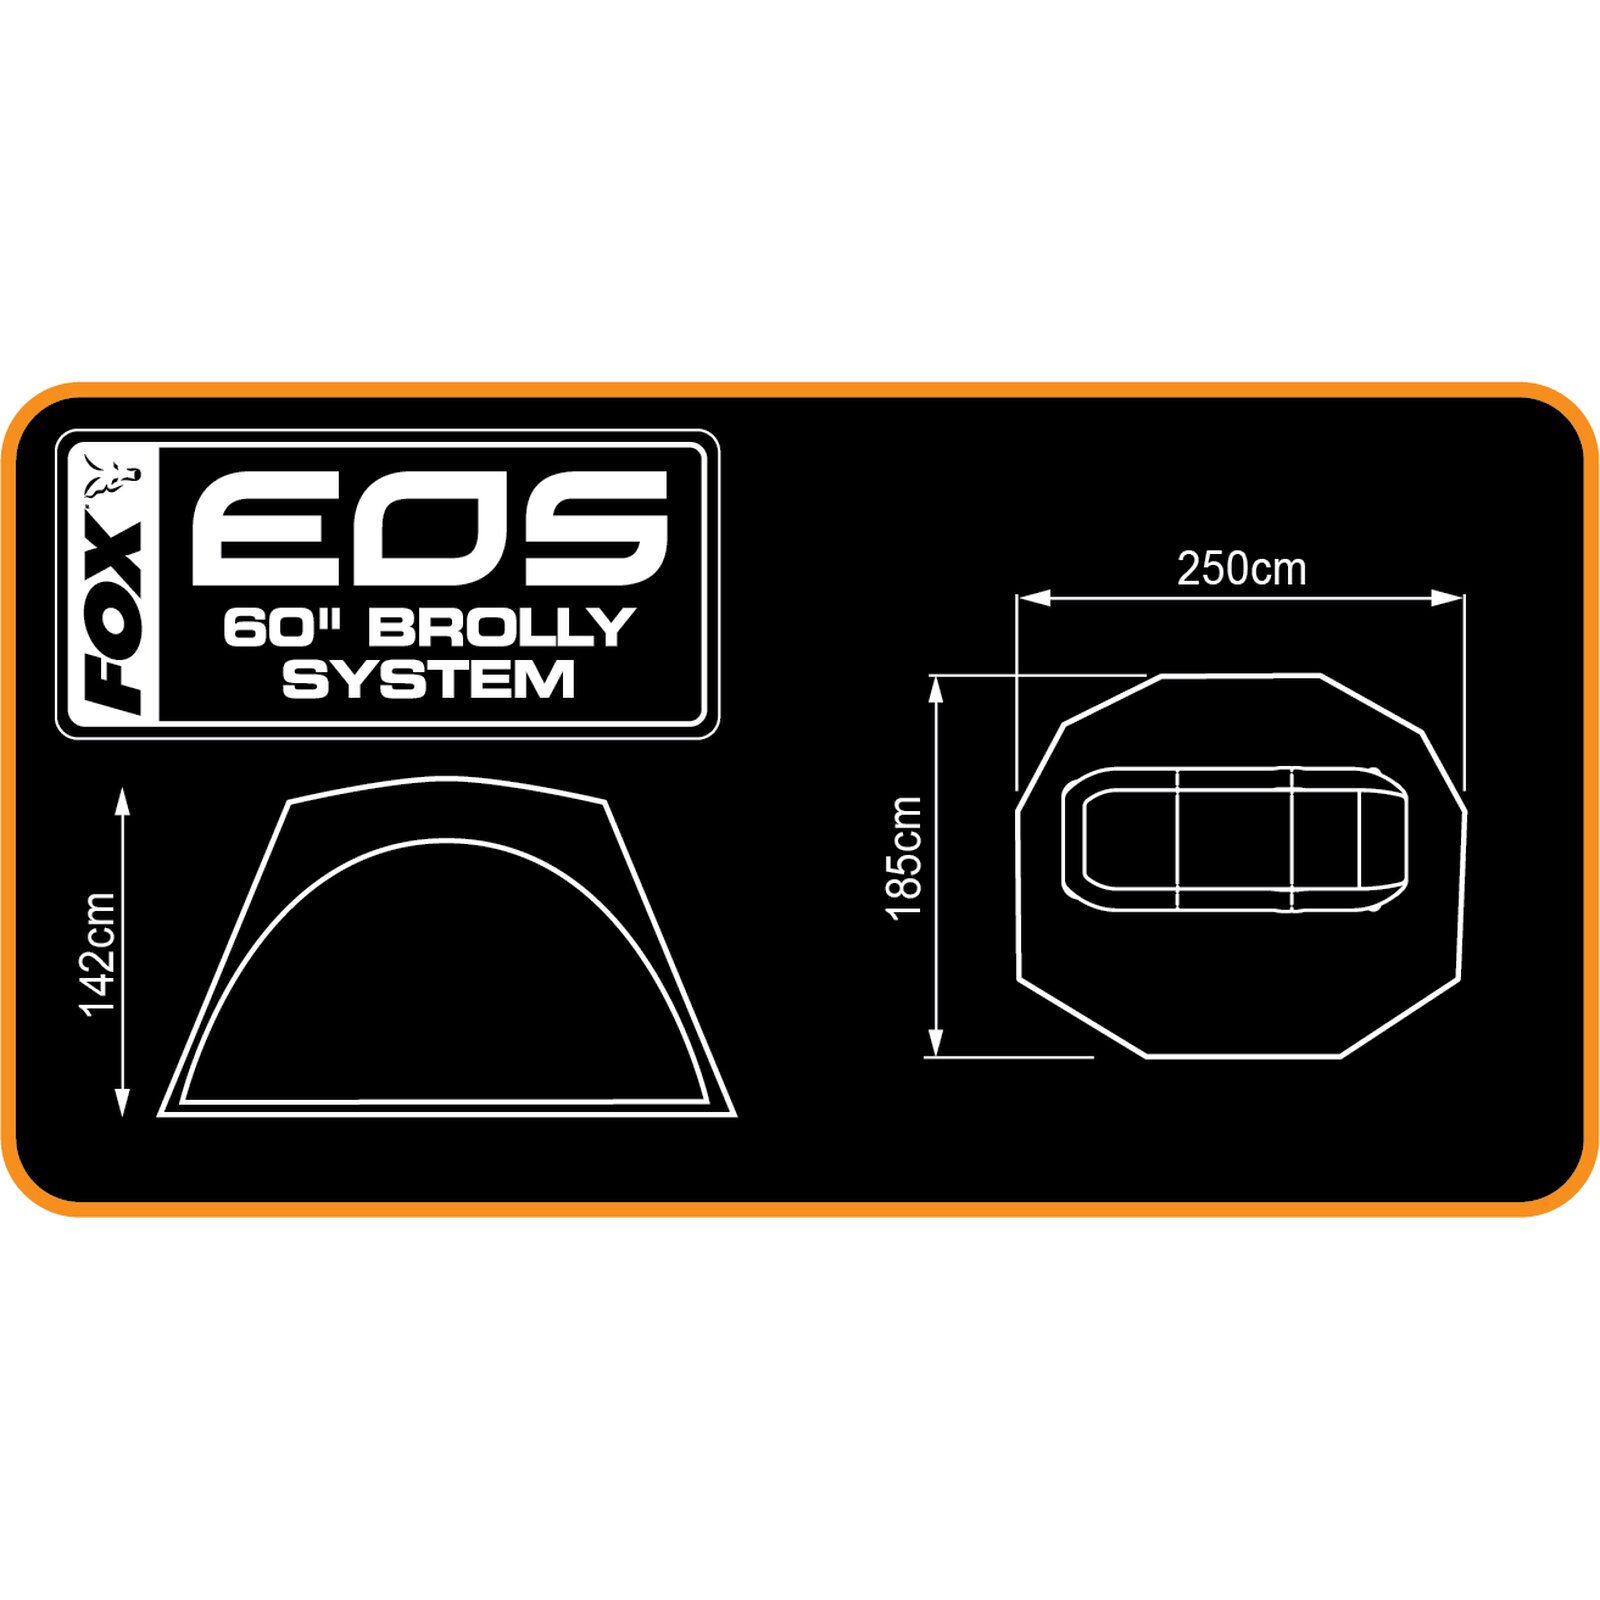 FOX EOS 60 Brolly System